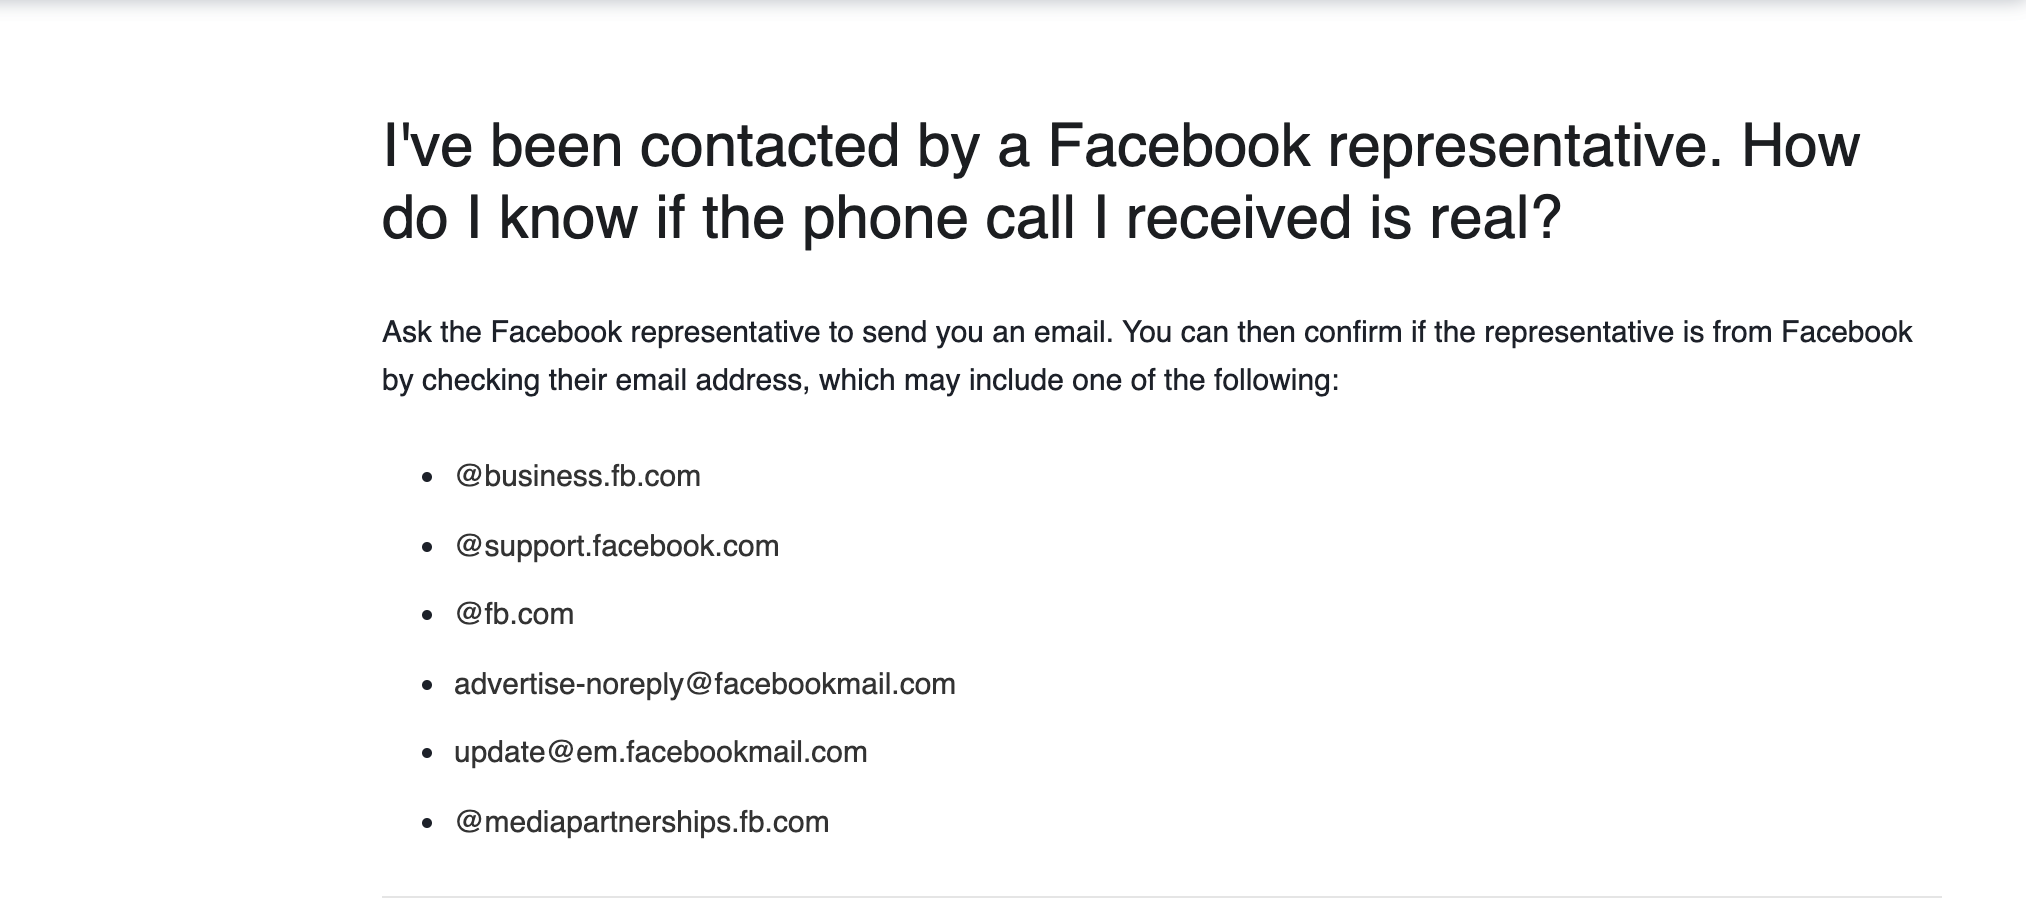 Facebook Representative Contact Details